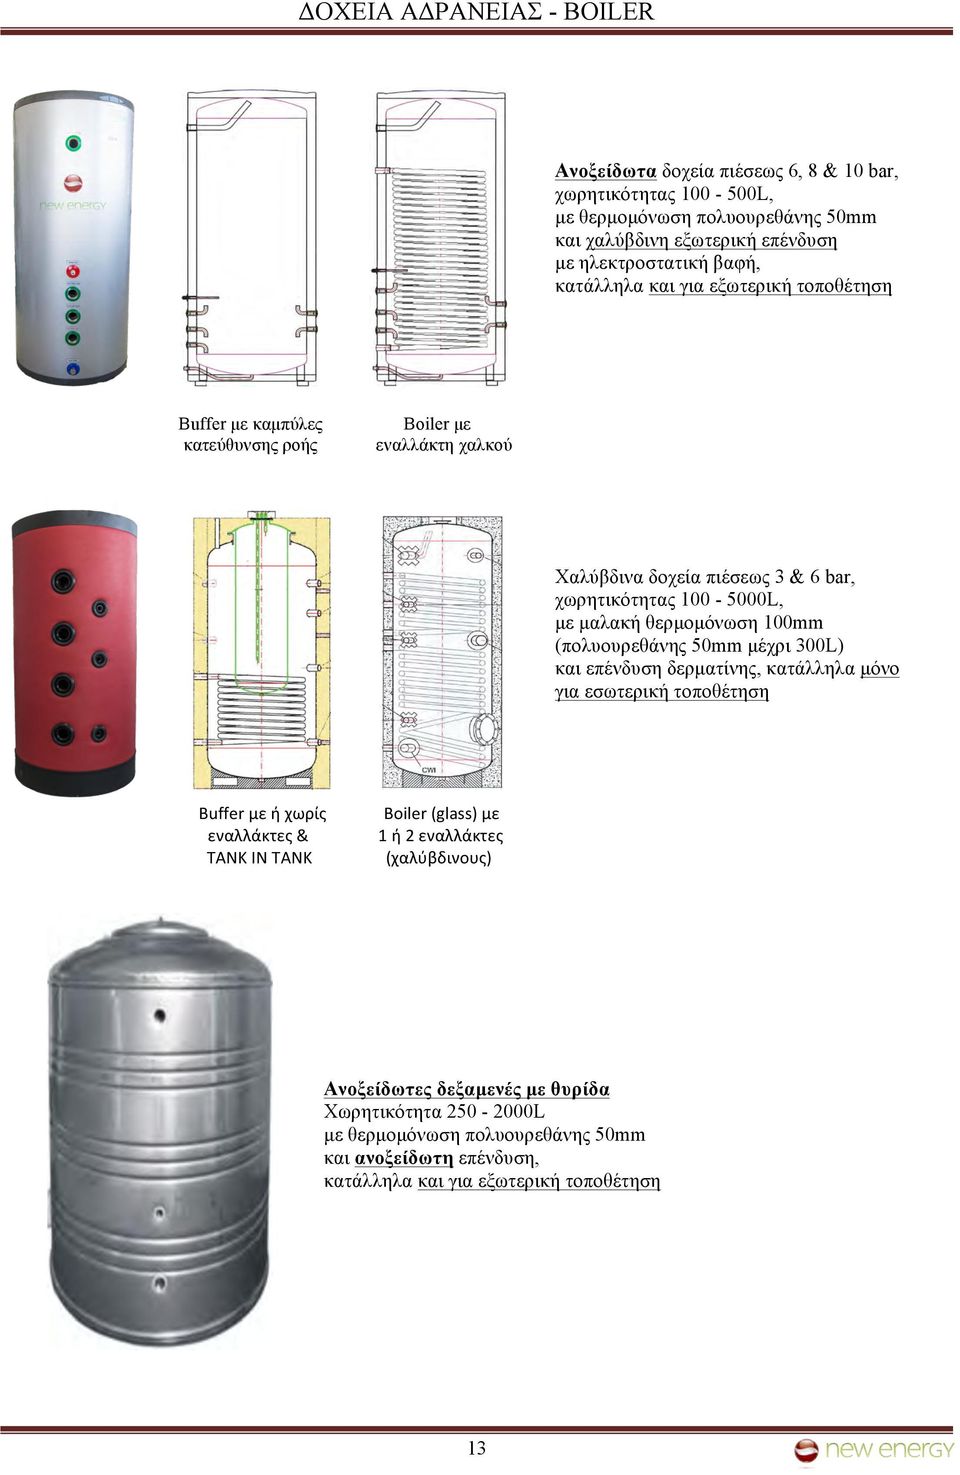 θερµοµόνωση 100mm (πολυουρεθάνης 50mm µέχρι 300L) και επένδυση δερµατίνης, κατάλληλα µόνο για εσωτερική τοποθέτηση Buffer με ή χωρίς εναλλάκτες & TANK IN TANK Boiler (glass) με 1